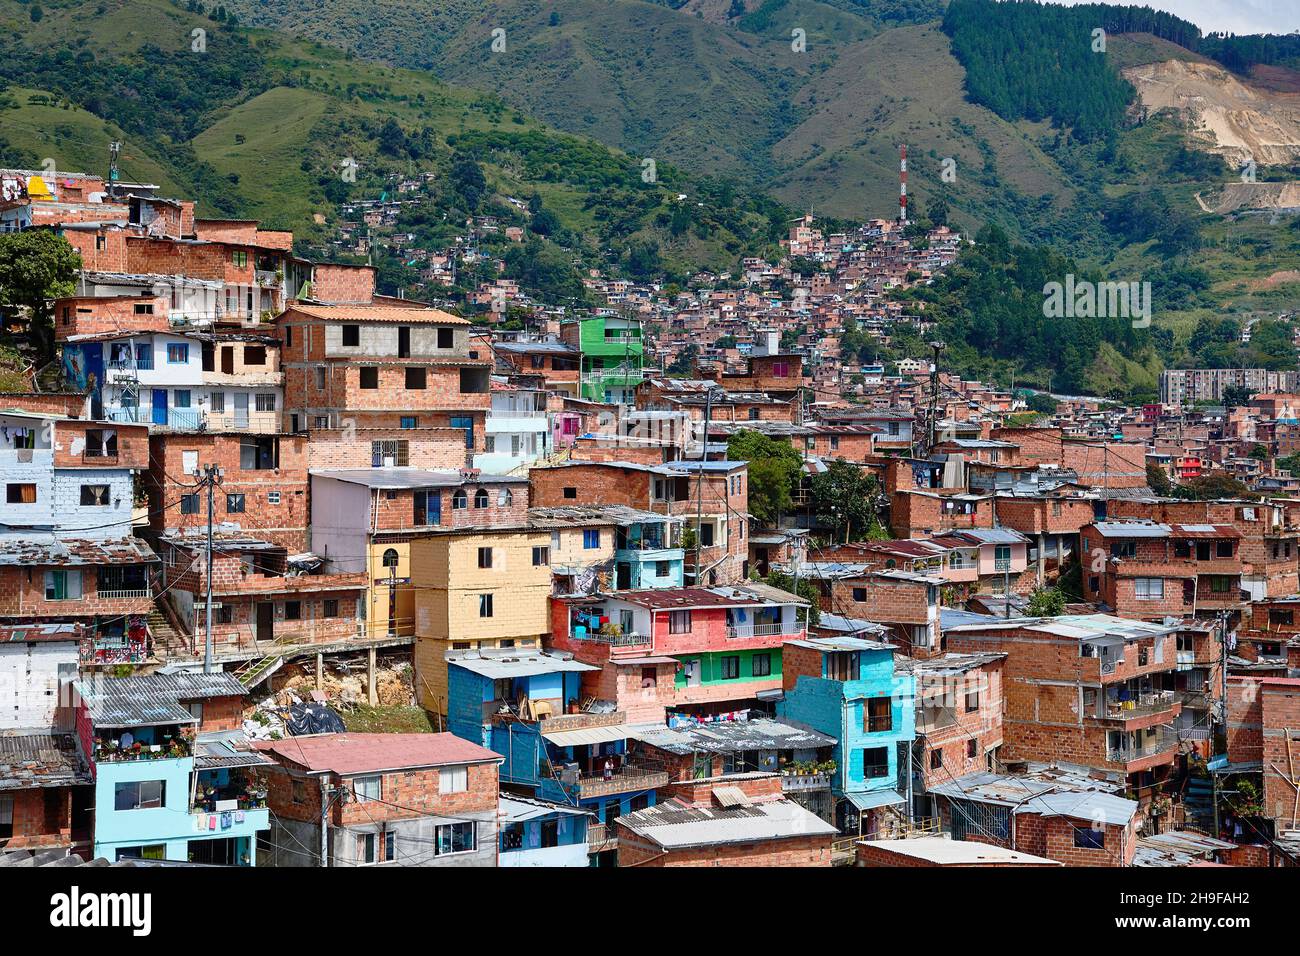 View of Comuna 13 in Medellin Stock Photo